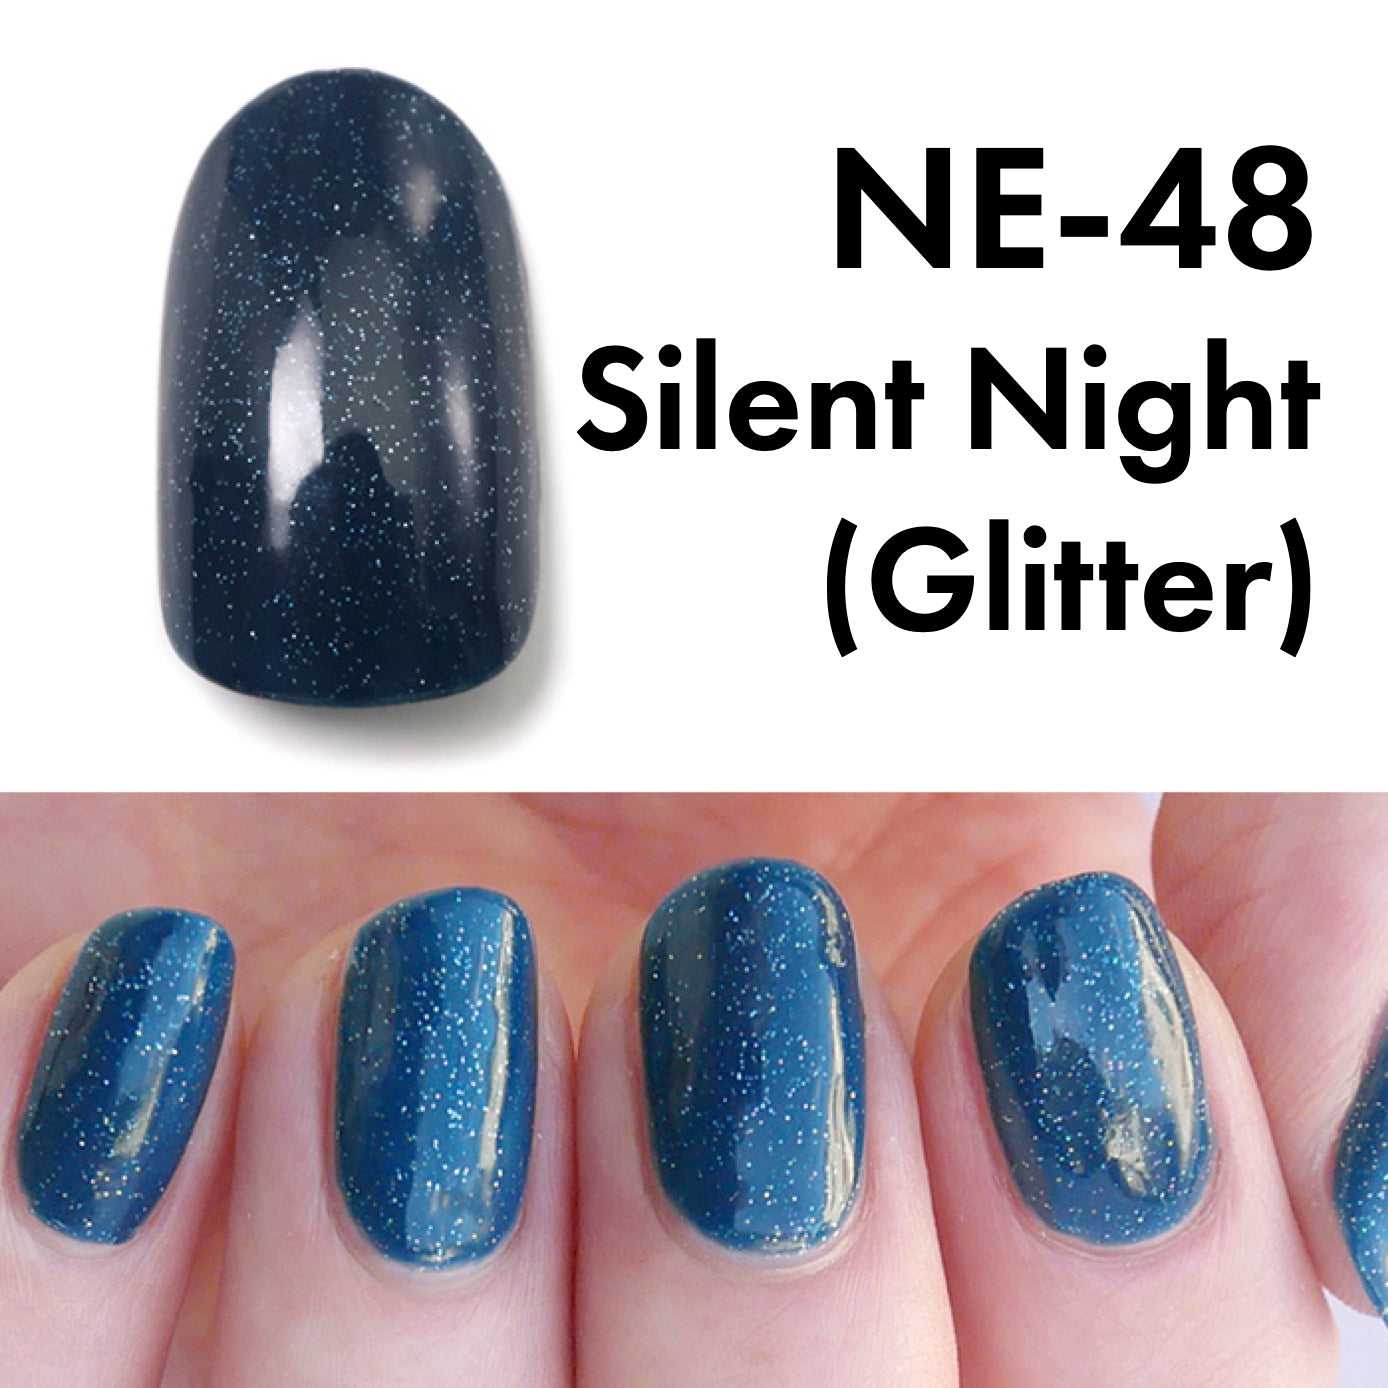 Gel Polish NE-48 "Silent Night"